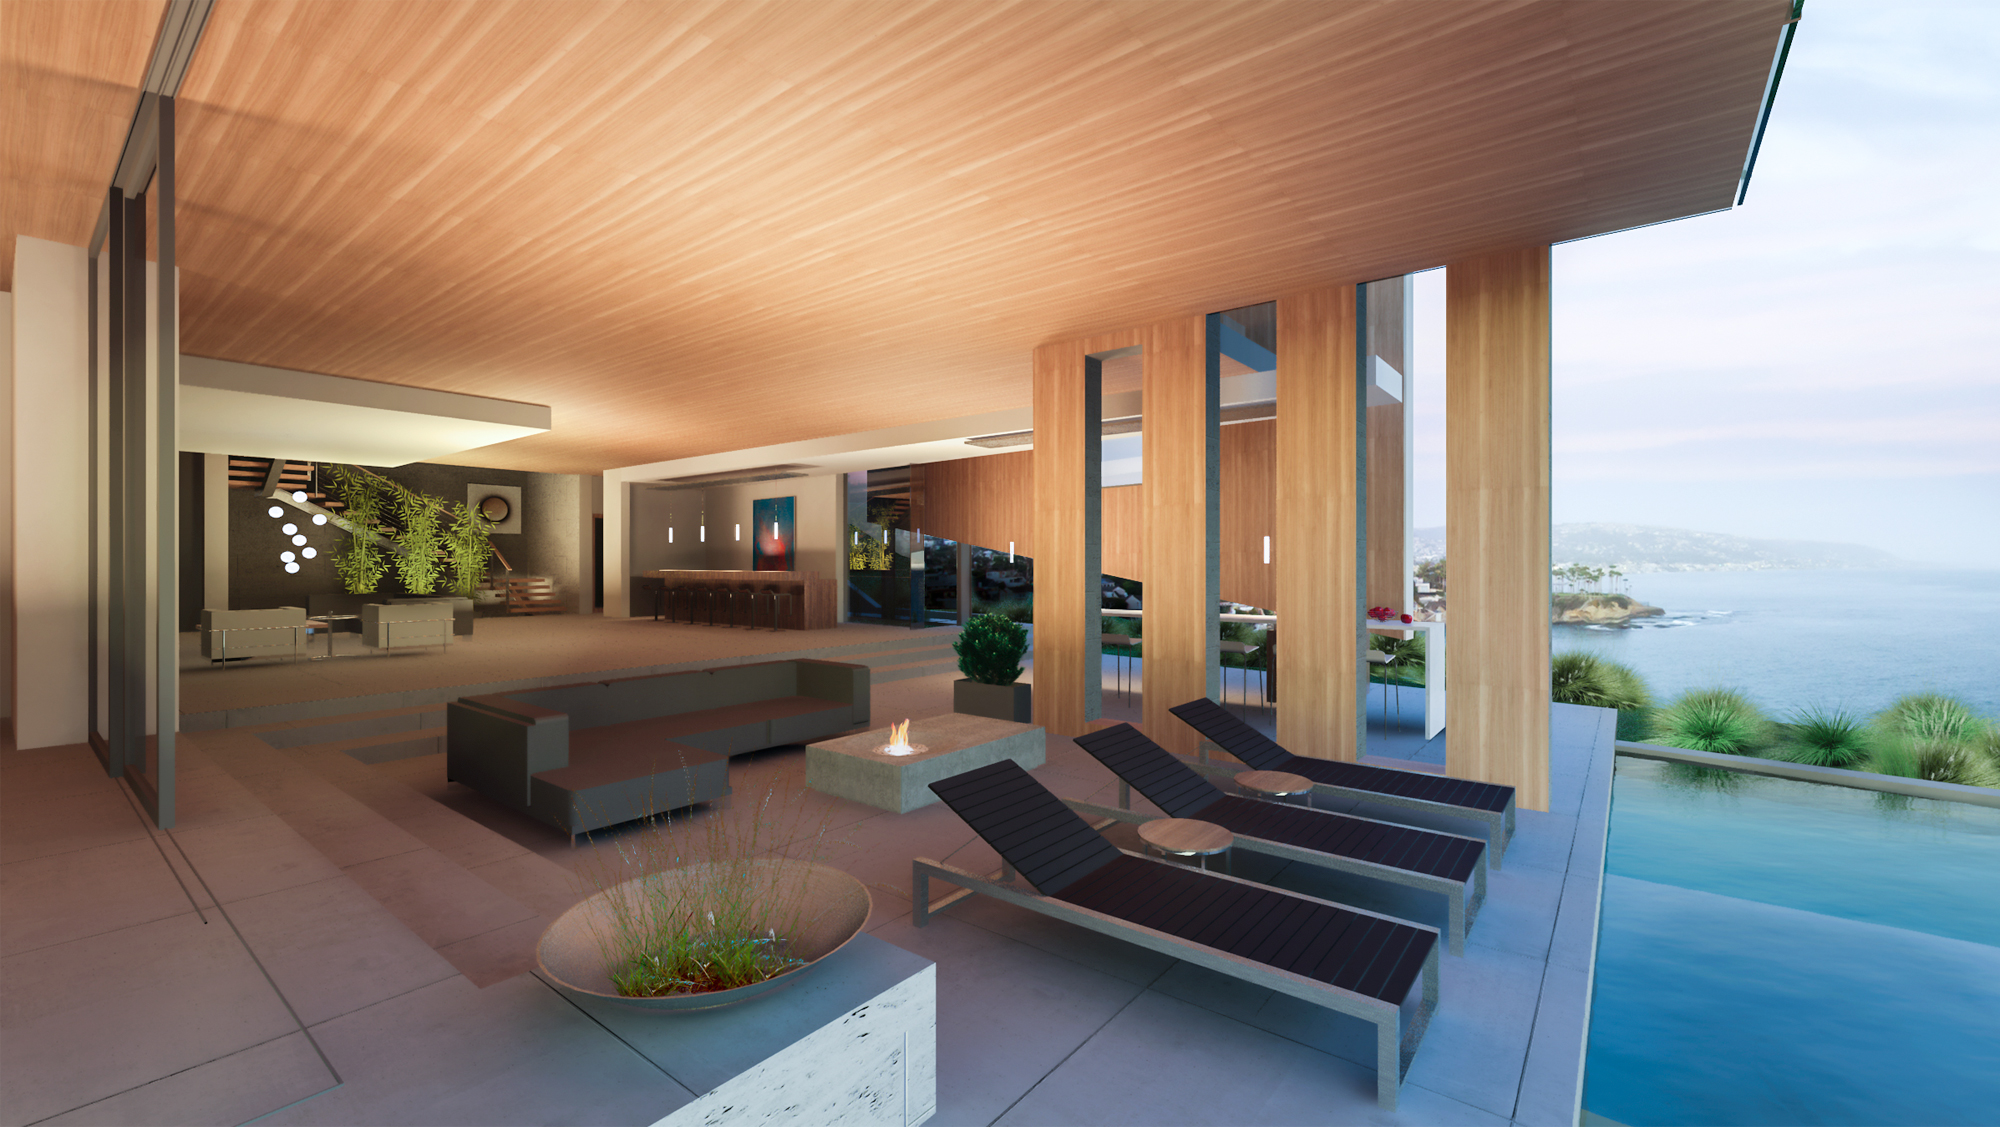 Shell House | Contemporary Home Design